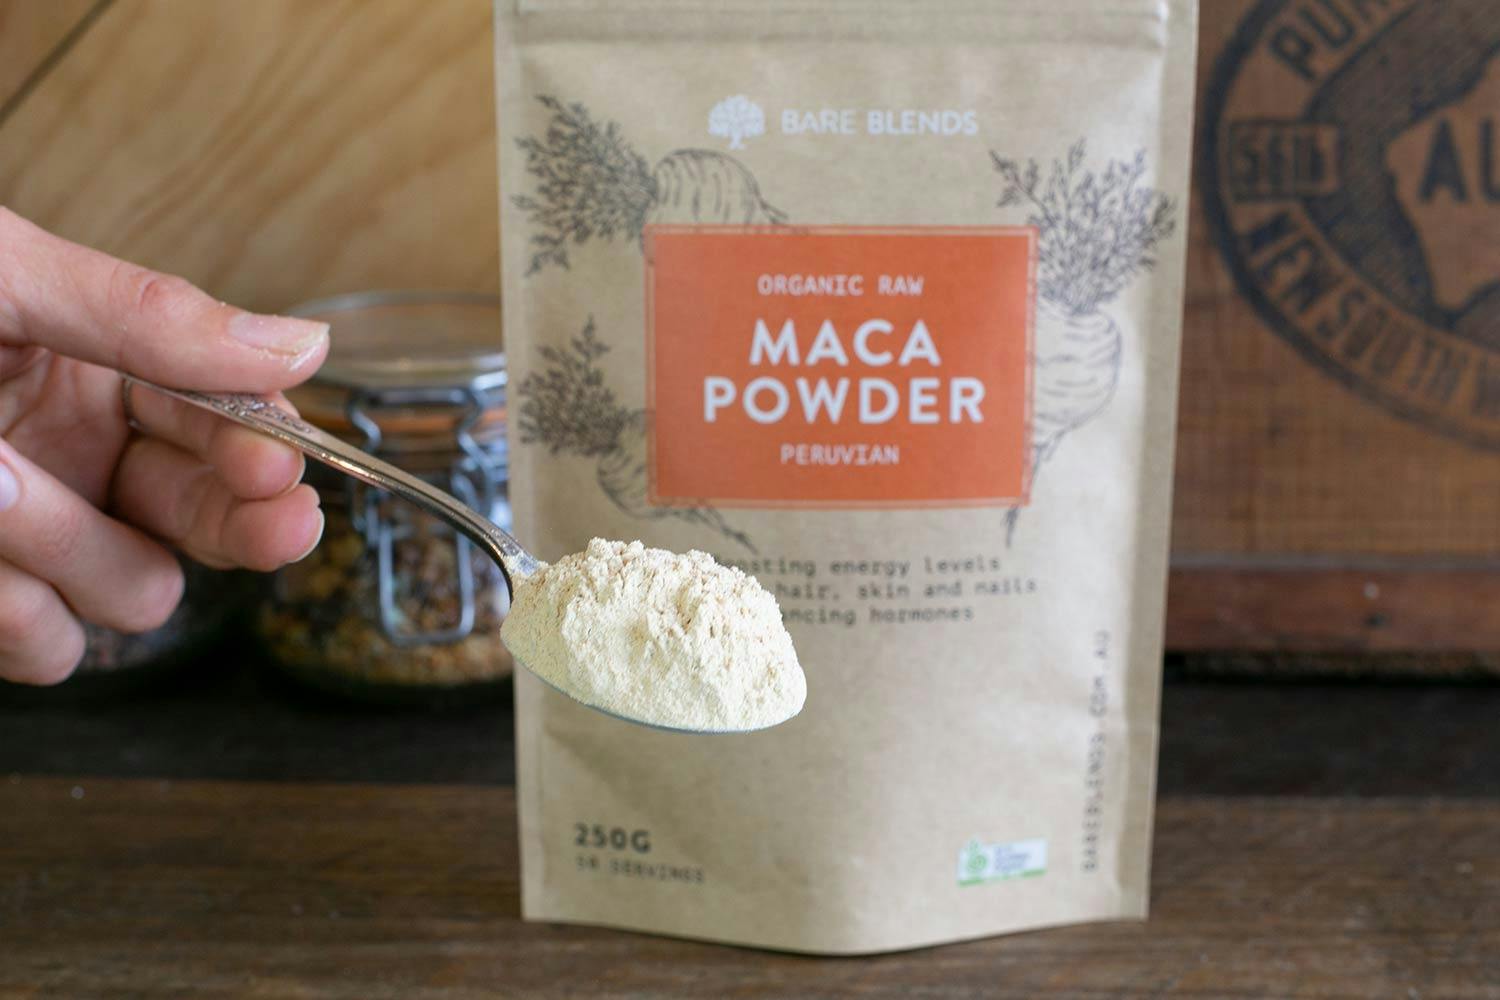 Organic Raw Maca Powder